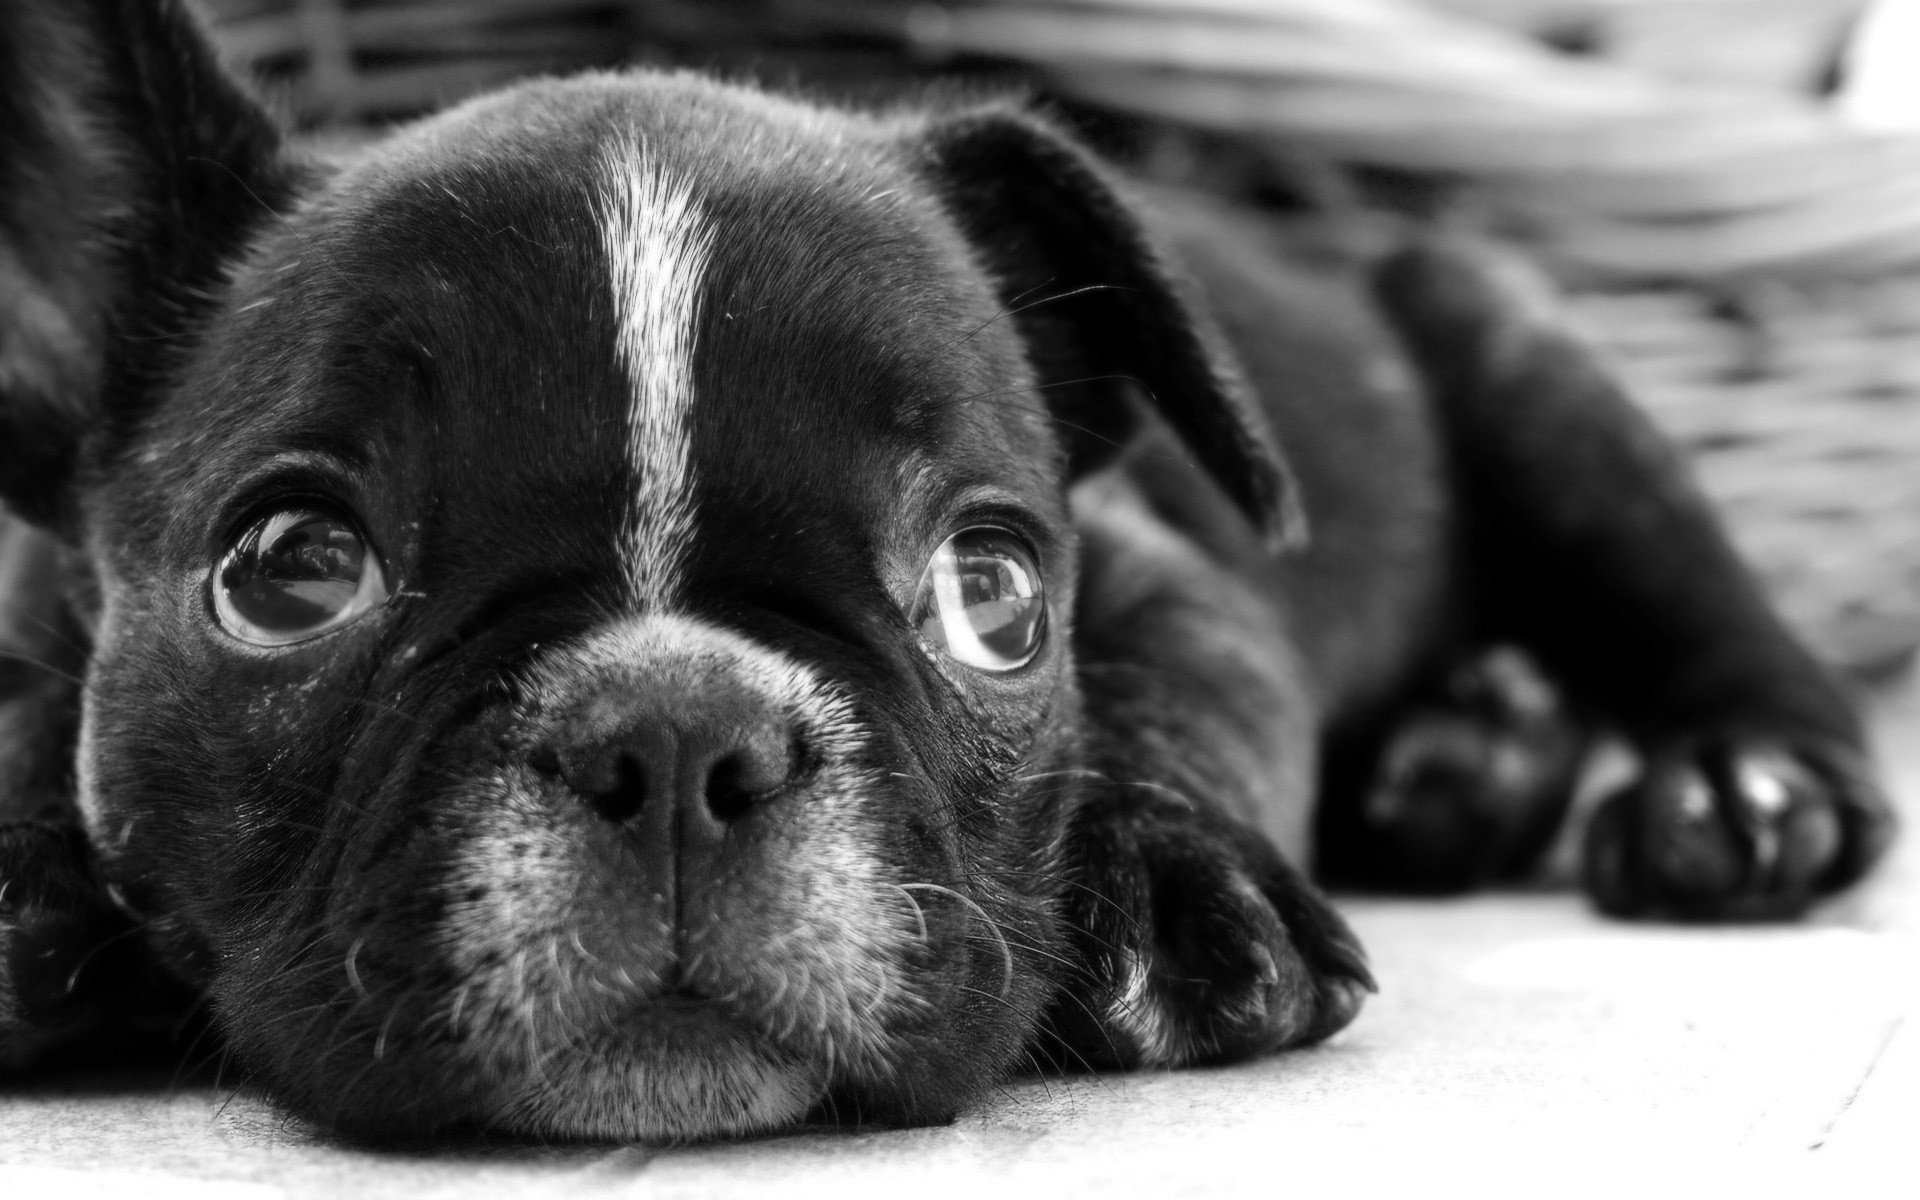 Картинки Бульдог, щенок, собака, черный белый, лицо, глаза, печаль фото и обои на рабочий стол